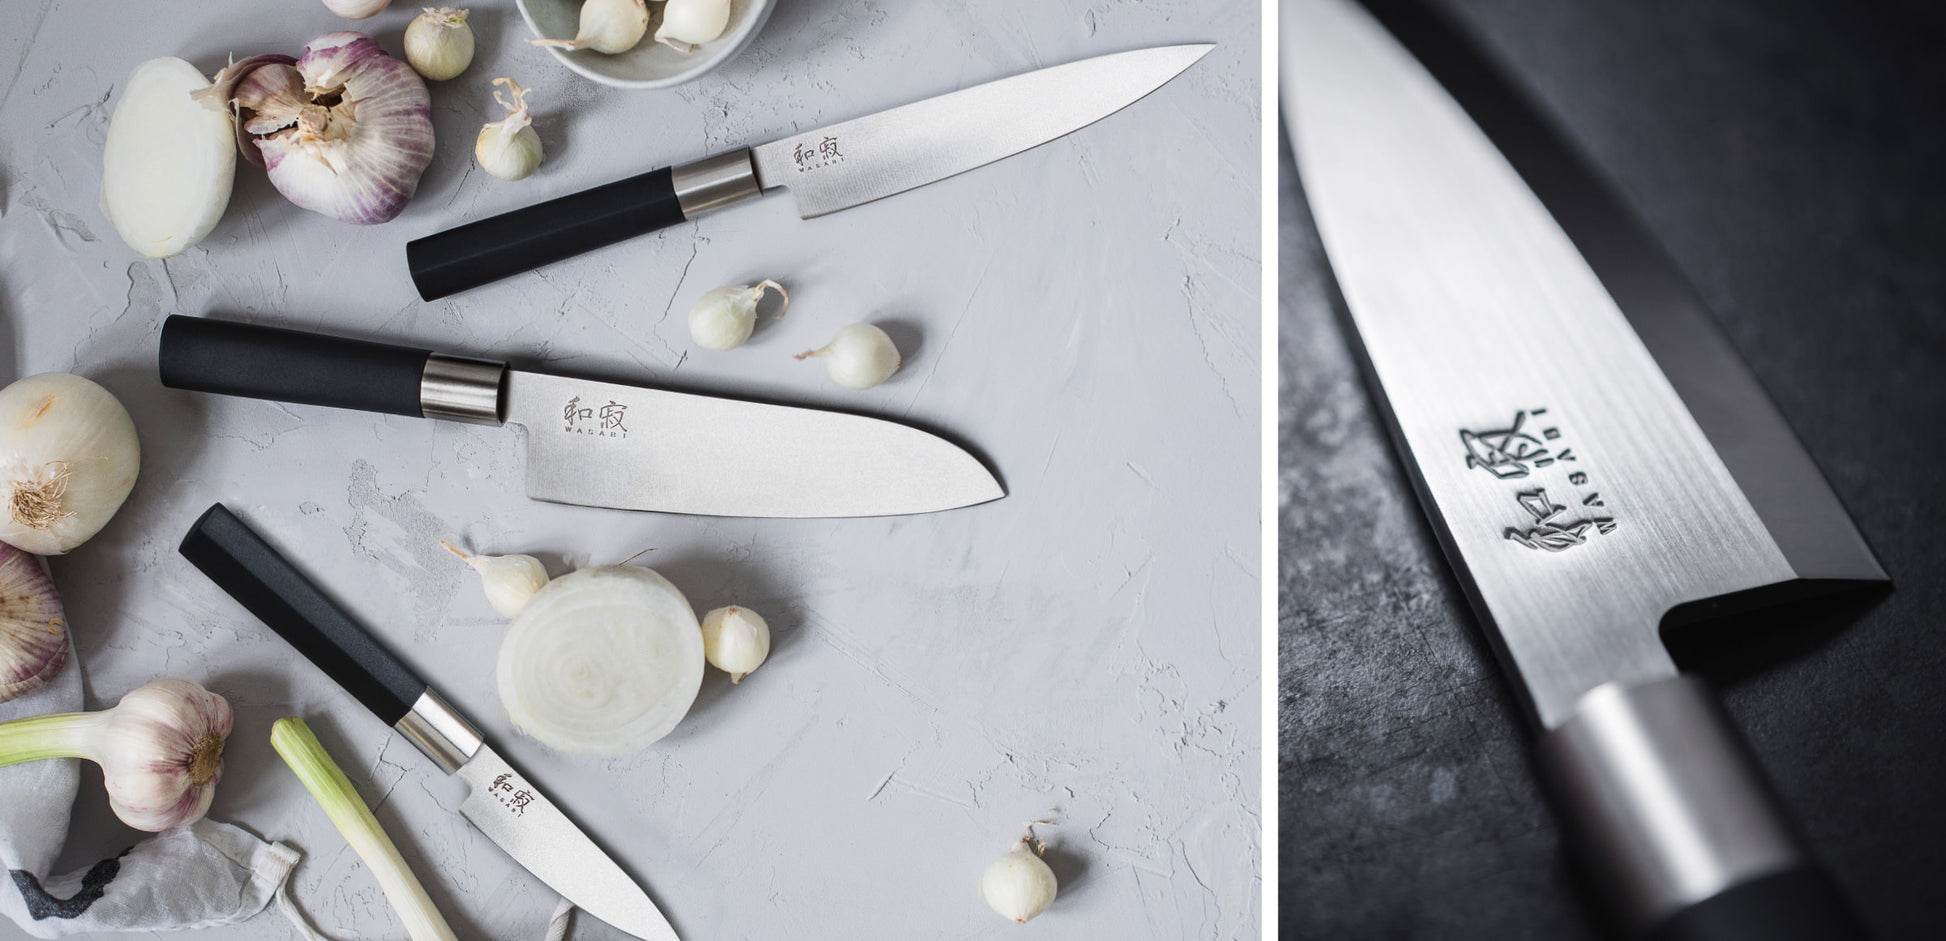 Kai Japan - Wasabi 6720C - Chef Knife 200mm - kitchen knife